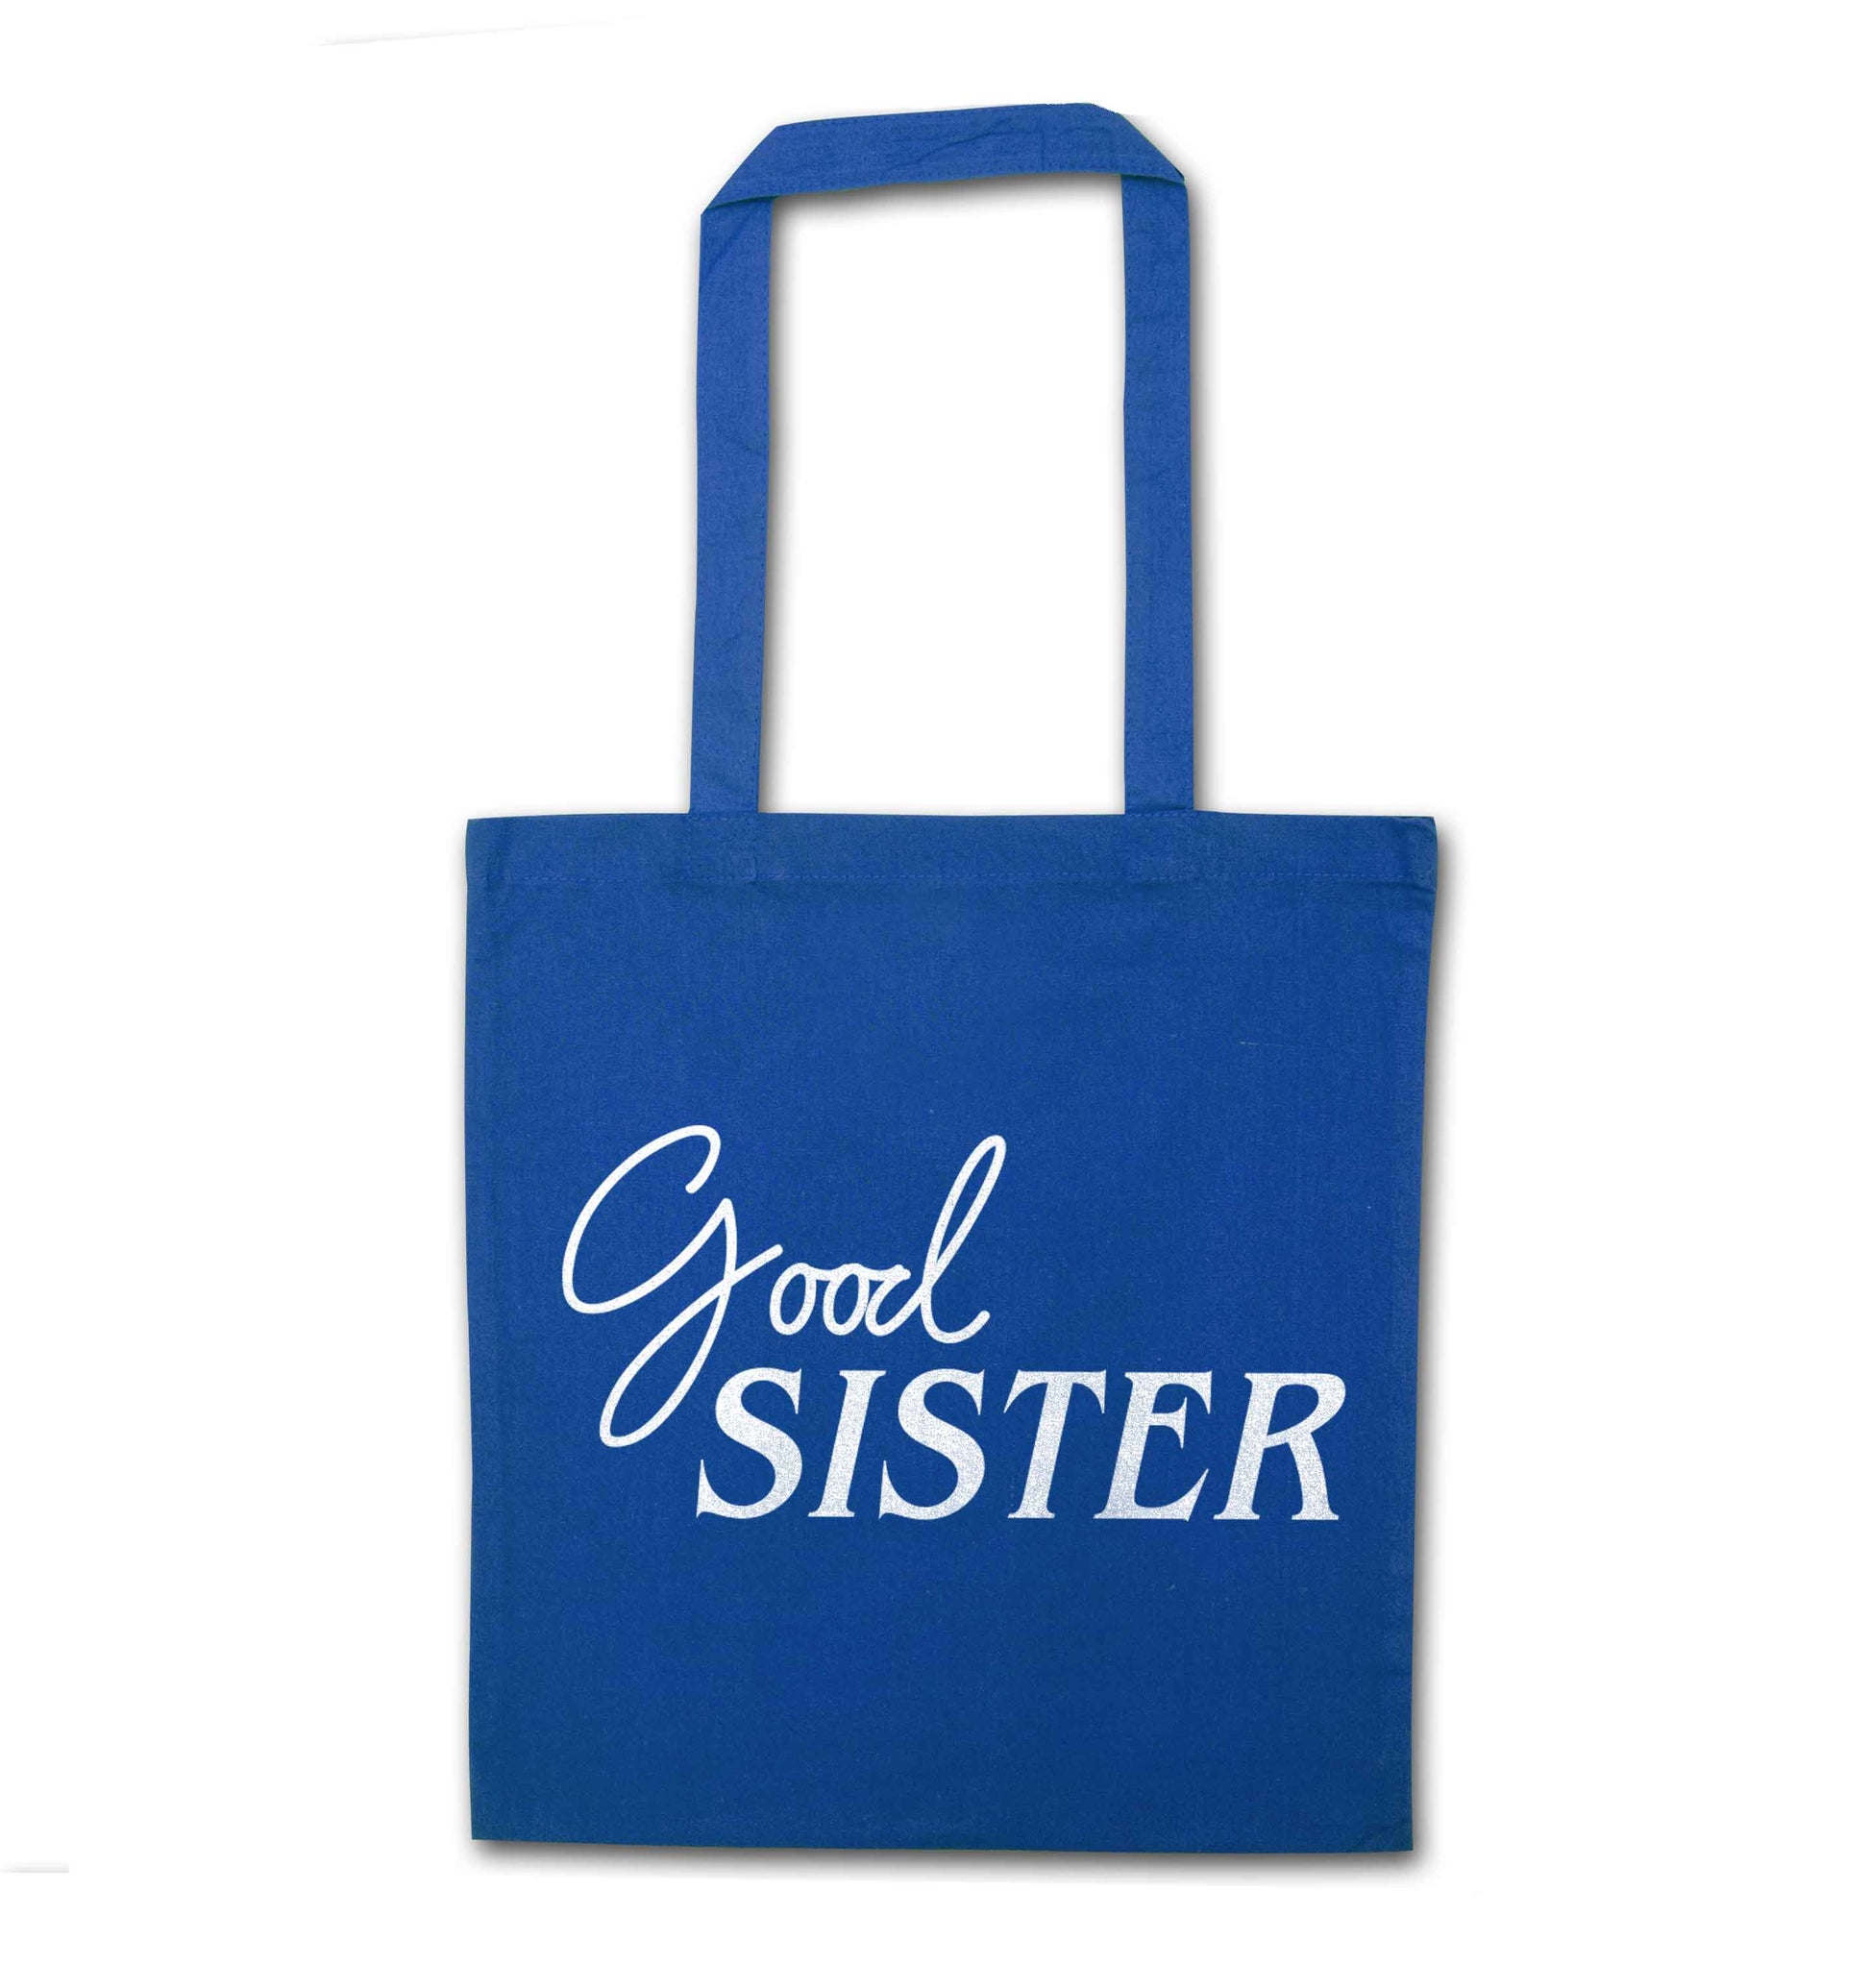 Good sister blue tote bag